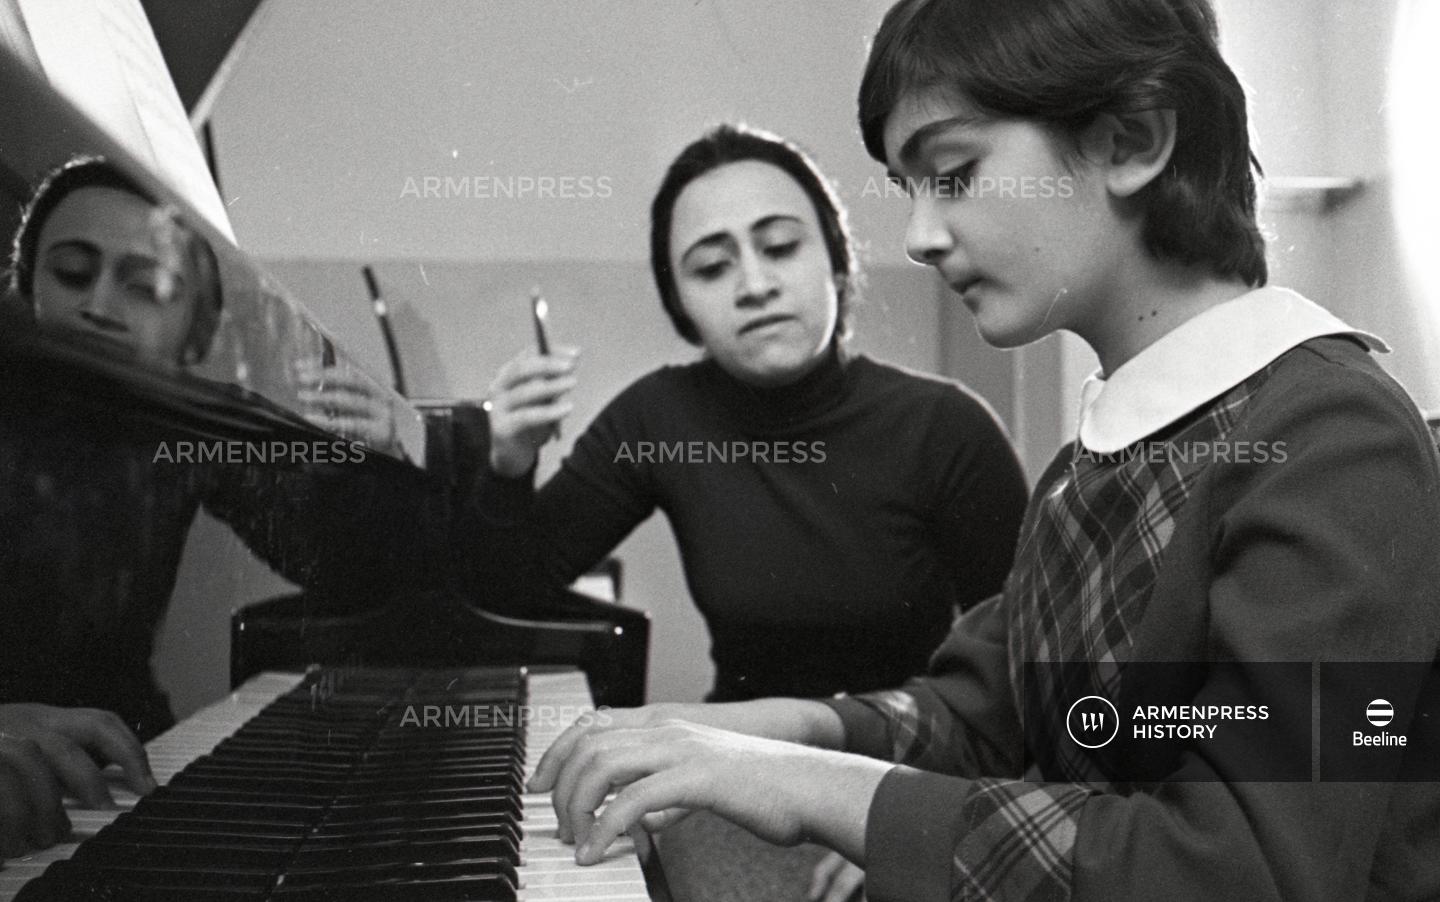 Երևանի թիվ 13 երաժշտական դպրոցի աշակերտուհին